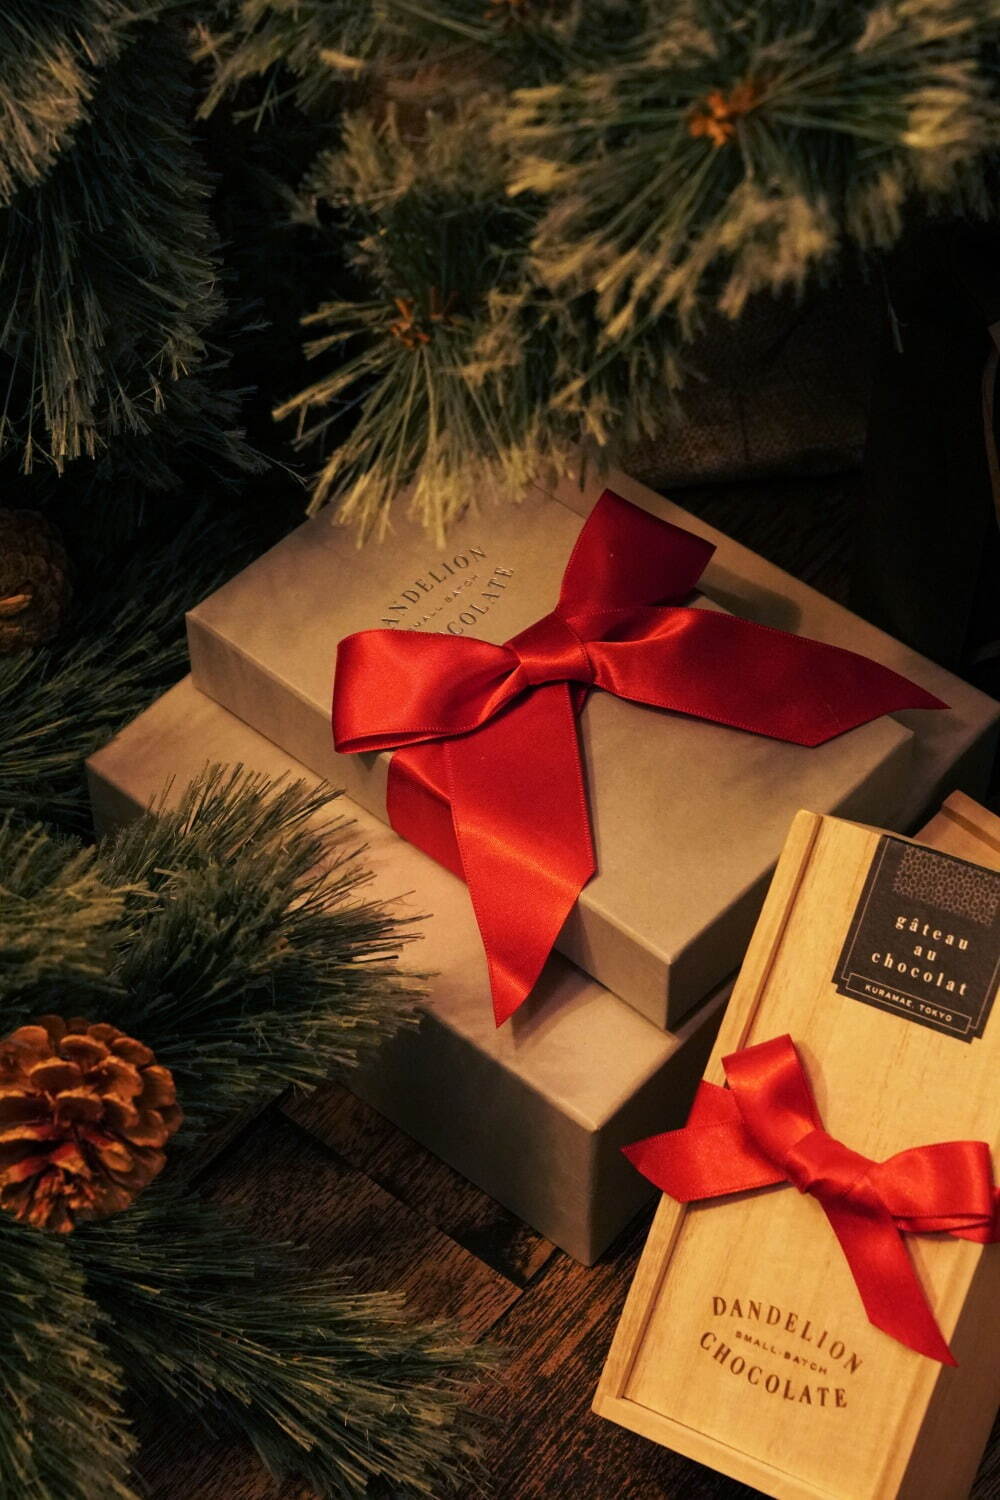 ダンデライオン・チョコレート23年クリスマススイーツ、チョコレート×ドライフルーツの限定シュトーレン｜写真9